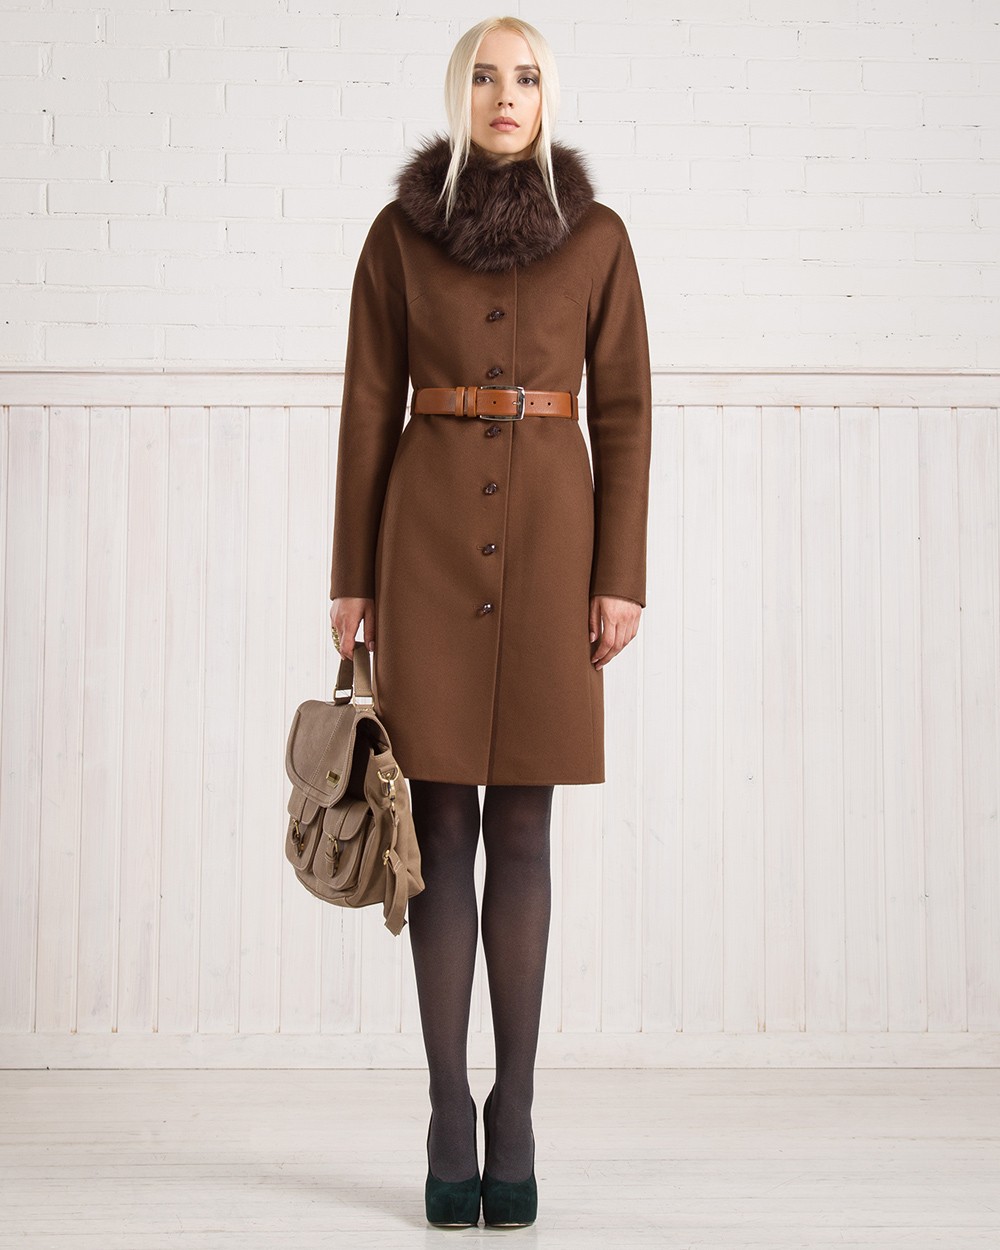 Купить коричневое пальто. Пальто зимнее. Коричневое пальто женское. Коричневое пальто. Пальто женское зимнее коричневое.